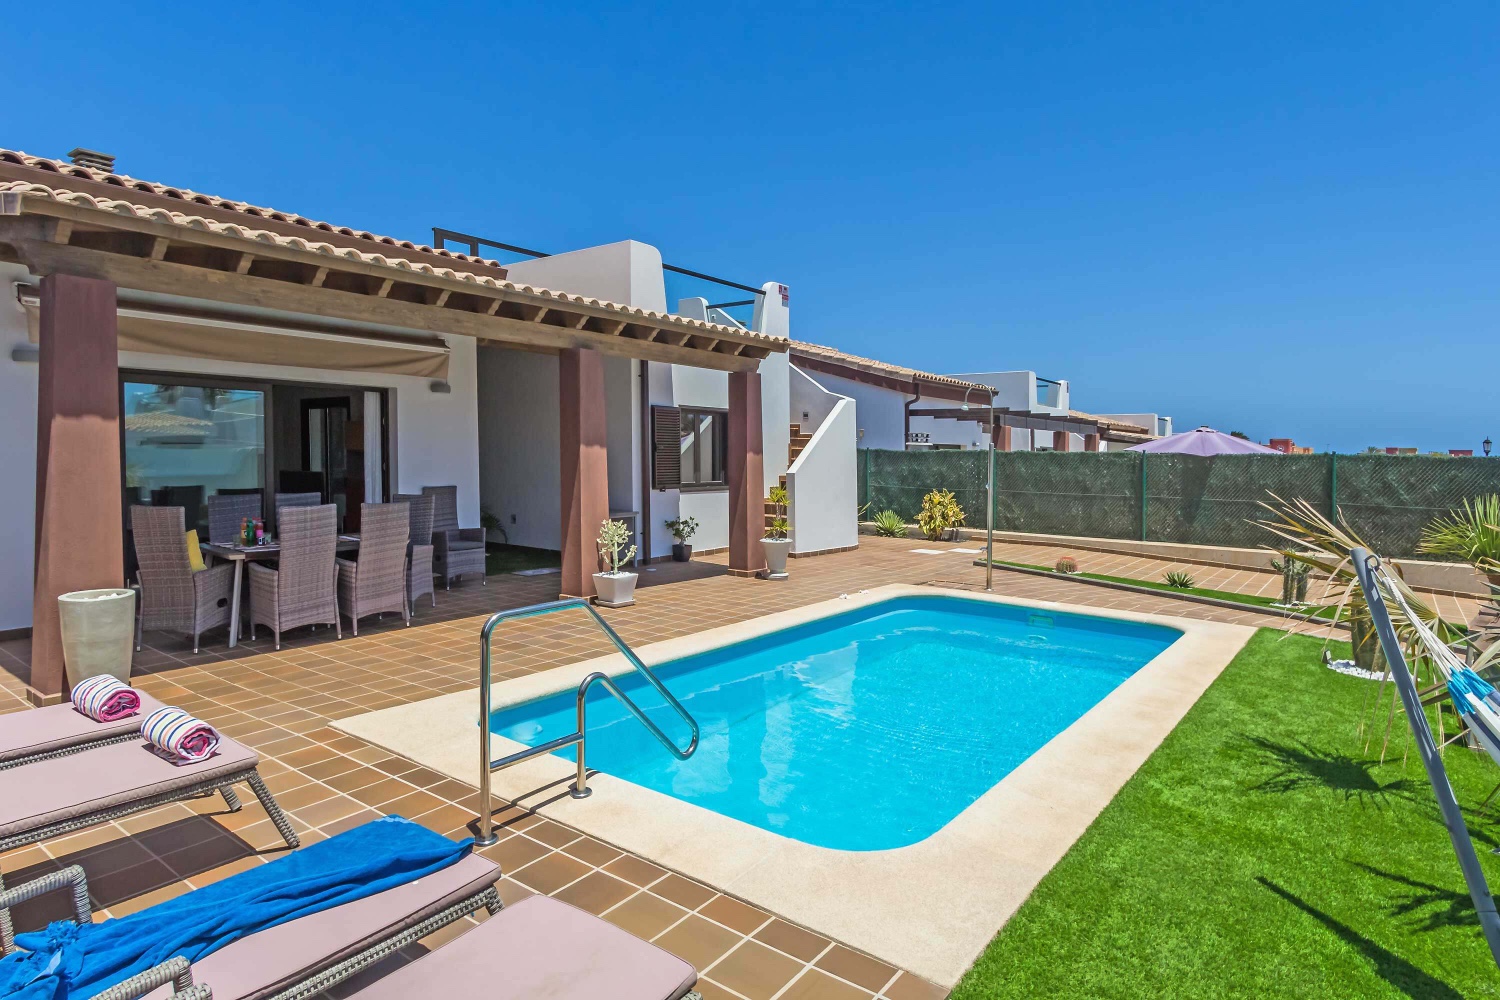 Luxuriöse und schöne Villa in einer angenehmen Umgebung, perfekt, um Ihren Urlaub auf der Insel Fuerteventura zu genießen